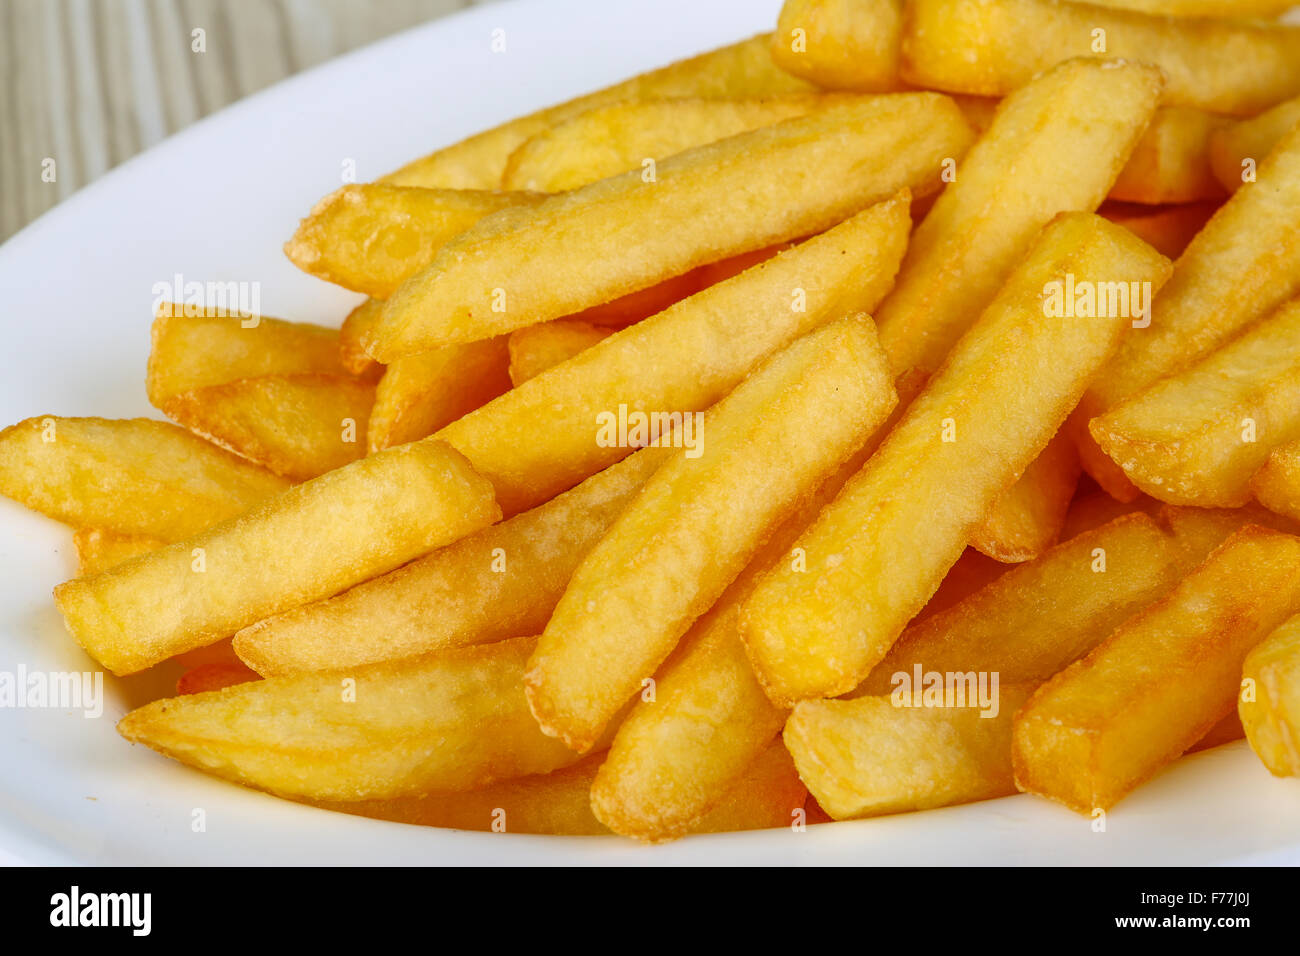 Frais chaud snack frites dans l'assiette Photo Stock - Alamy